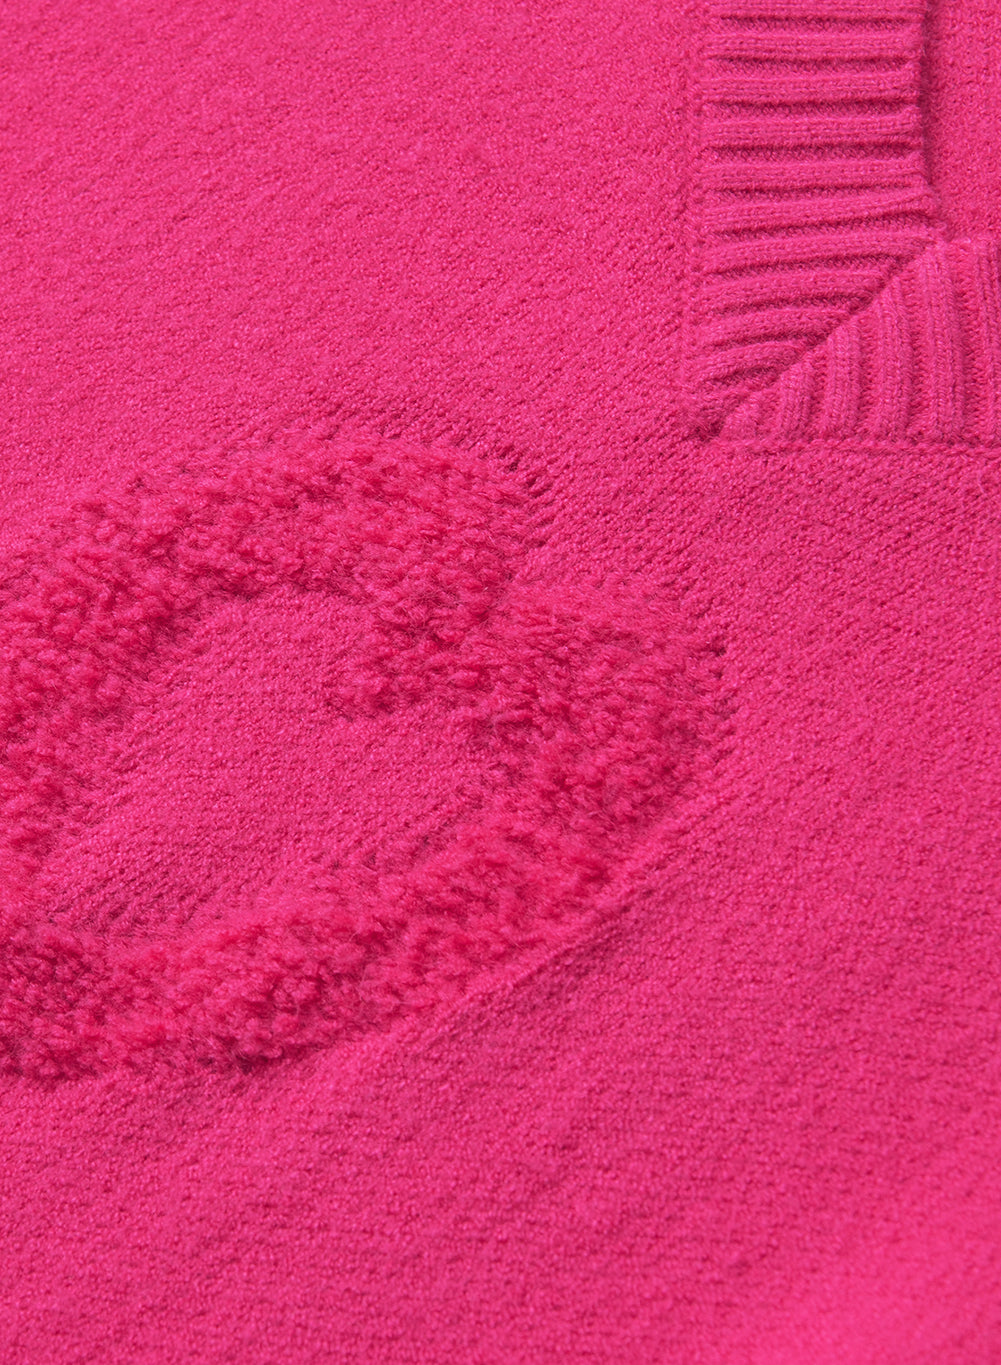 Pulover z v-izrezom, okrašen z rožnato rdečimi biseri in mehkimi srčki